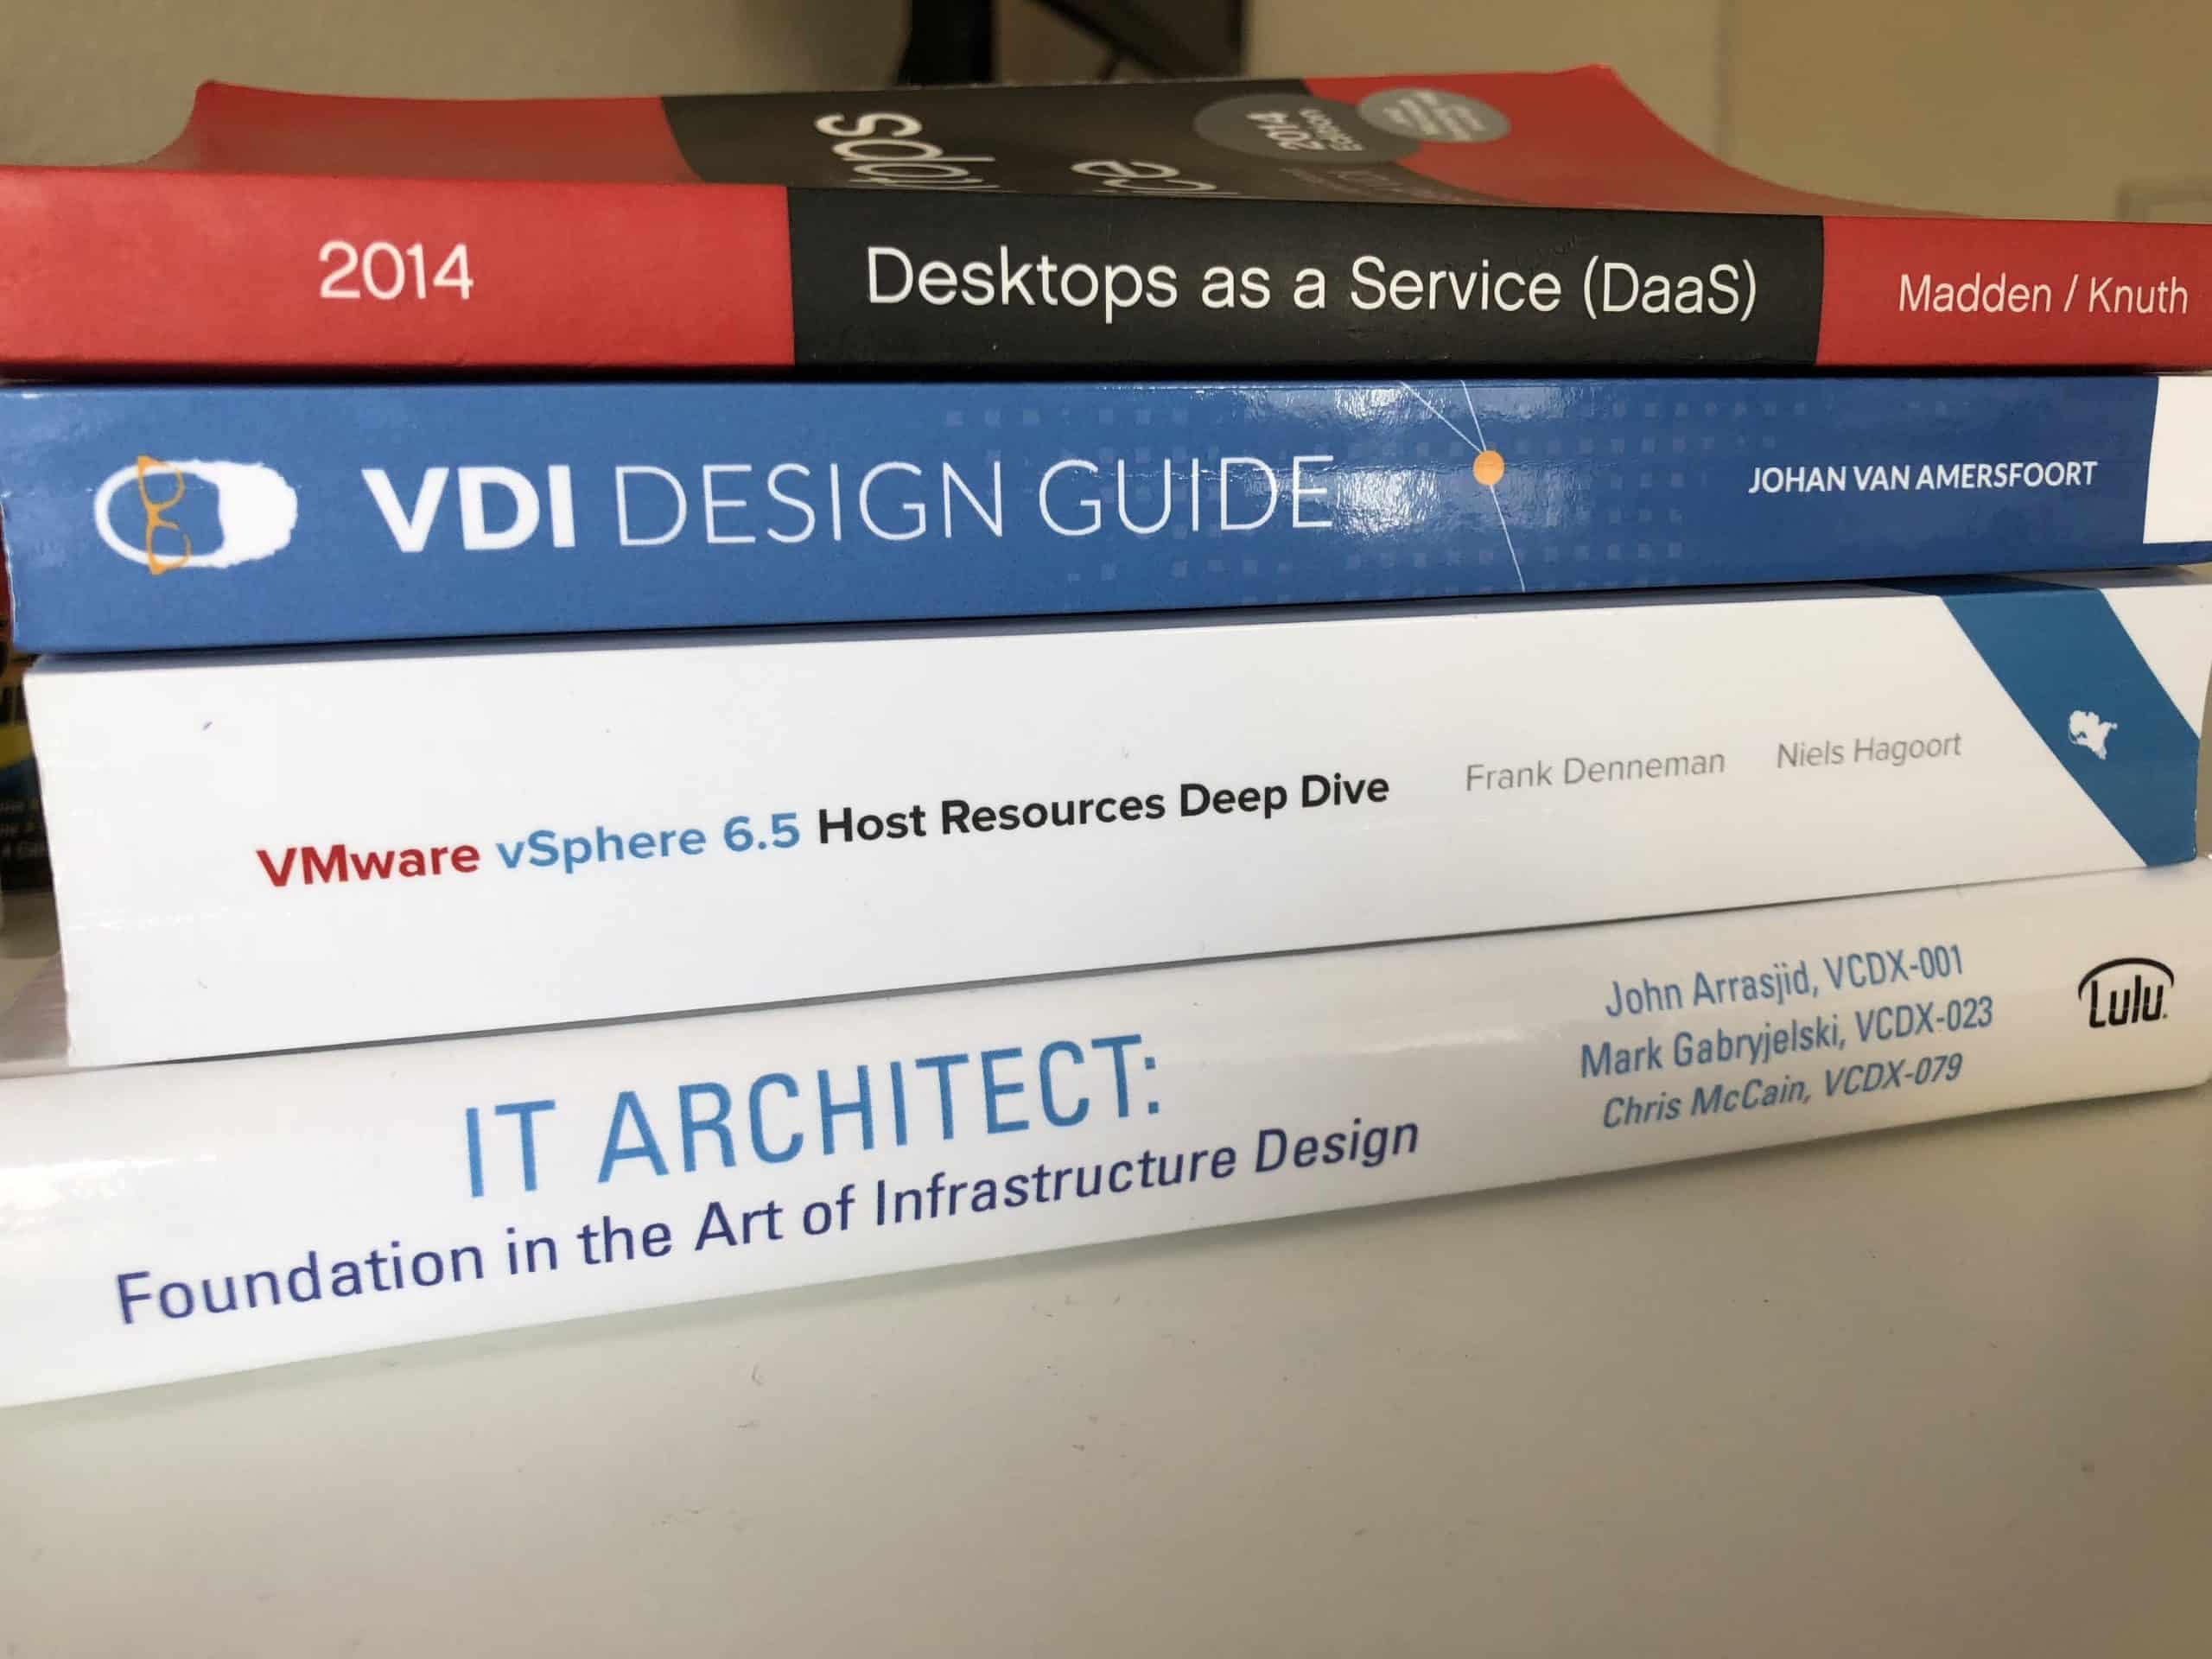 VDI Design Guide